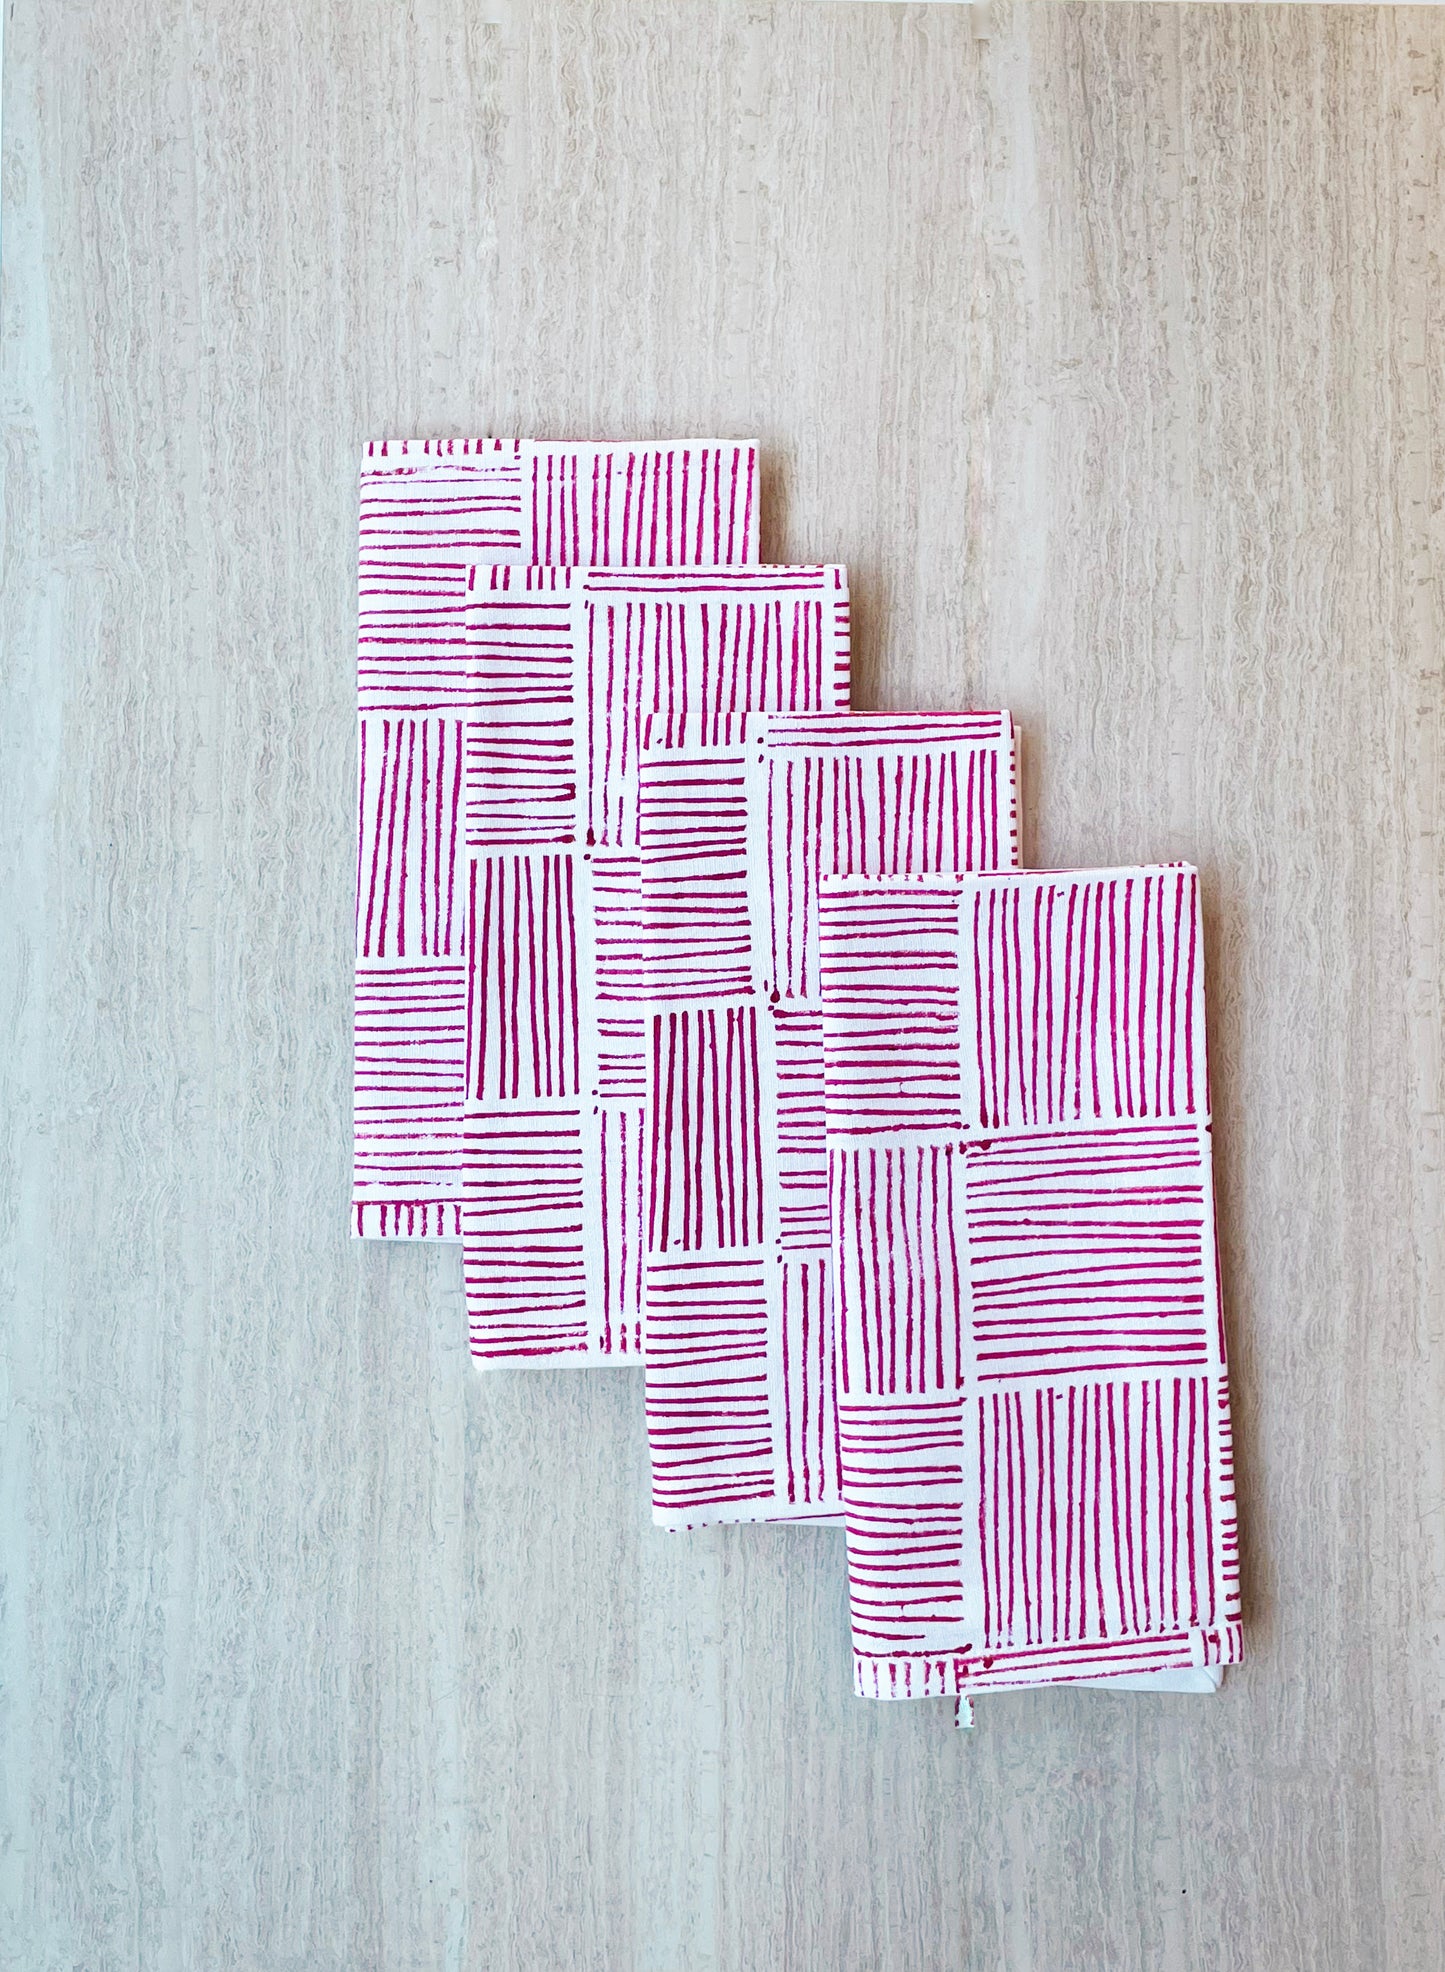 Dinner Napkins (set of 4) - Striped, Pink